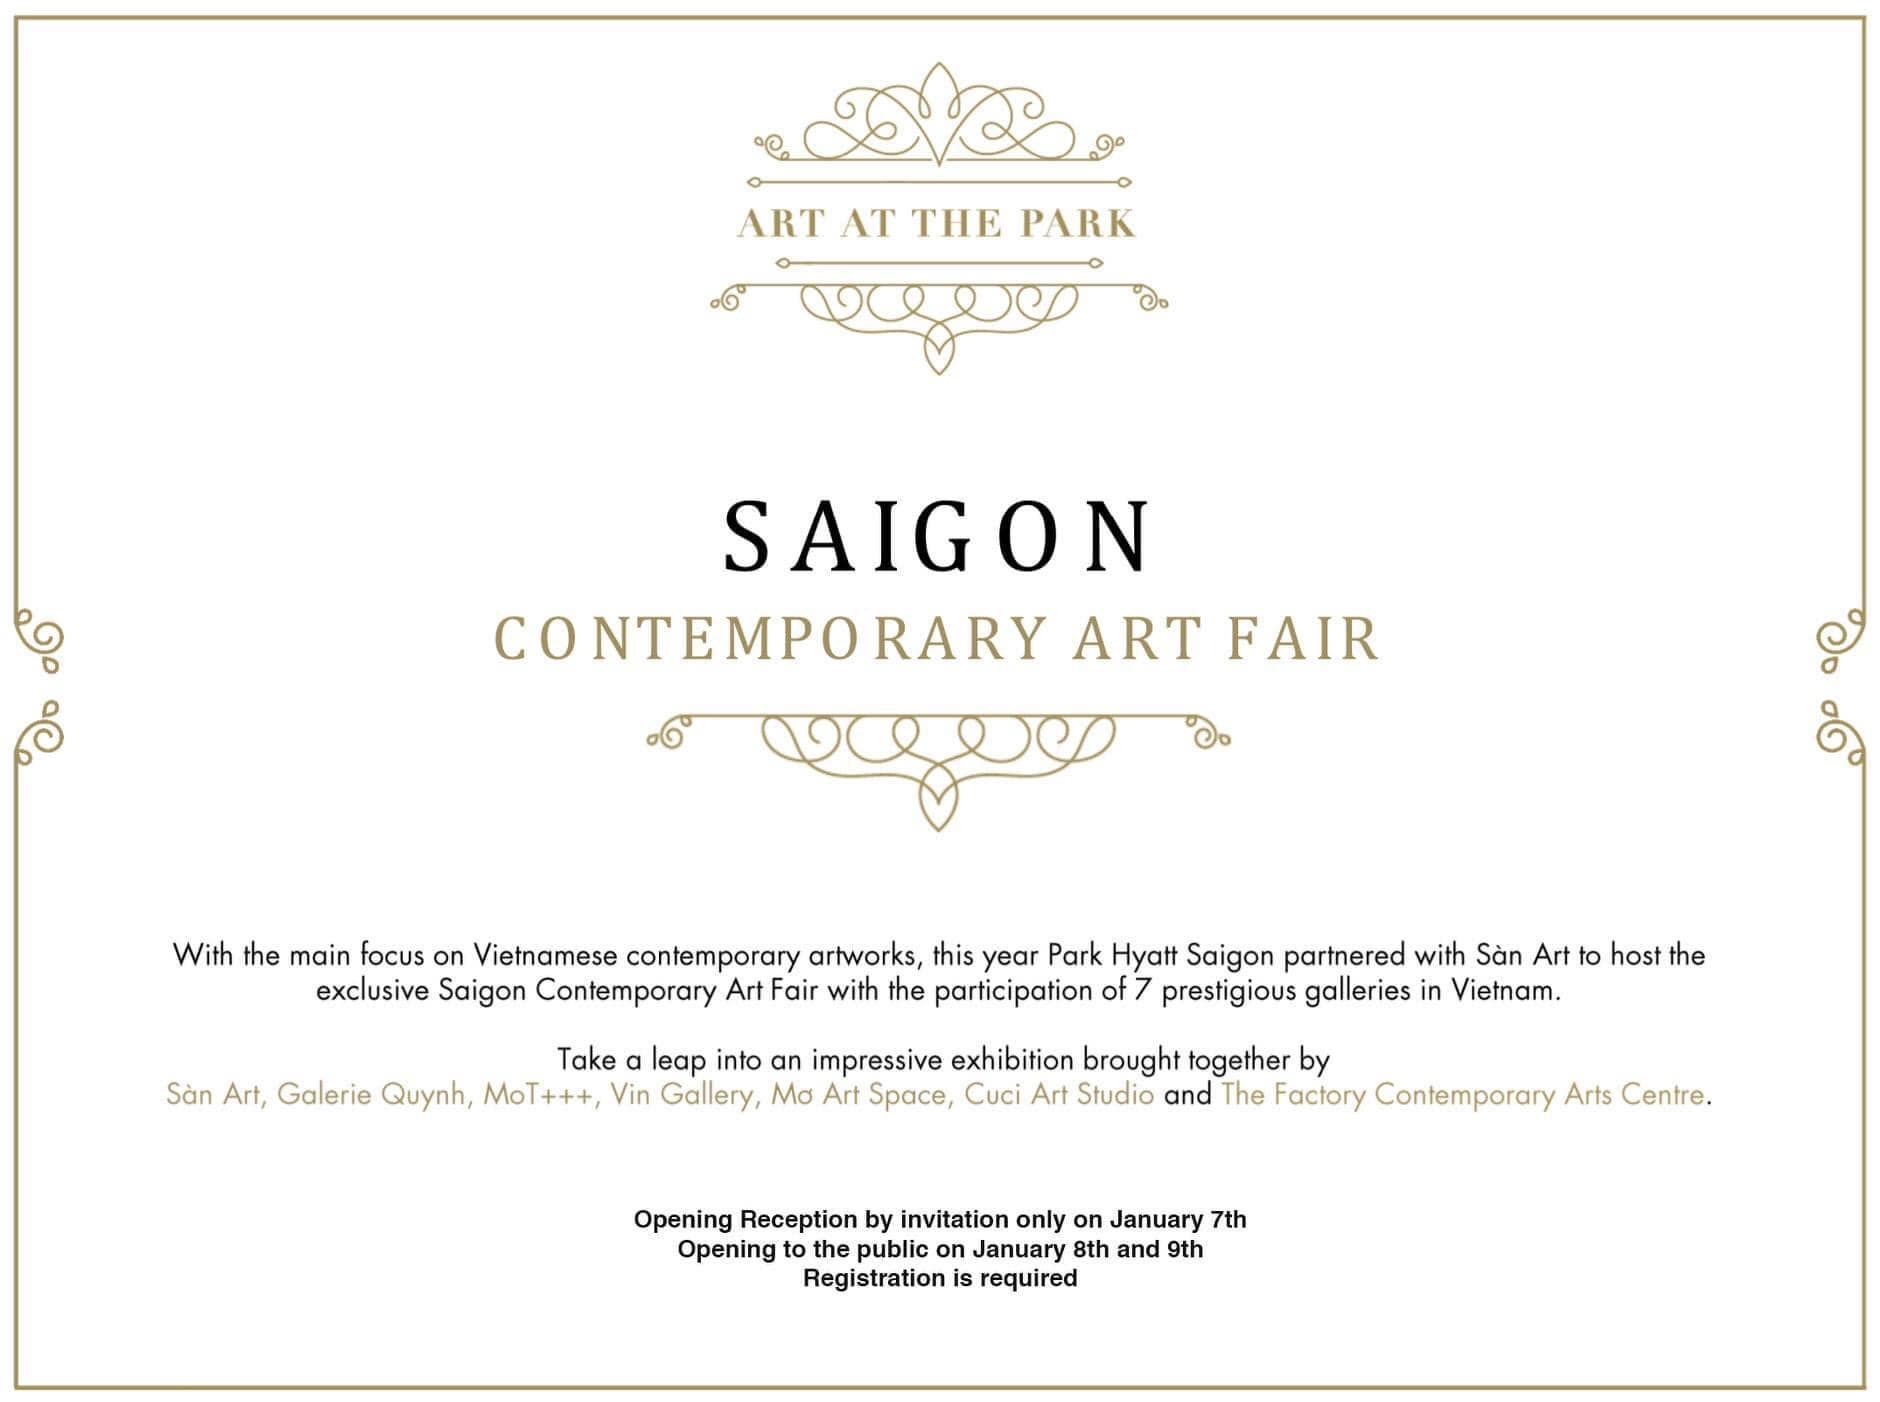 Saigon Contemporary Art Fair